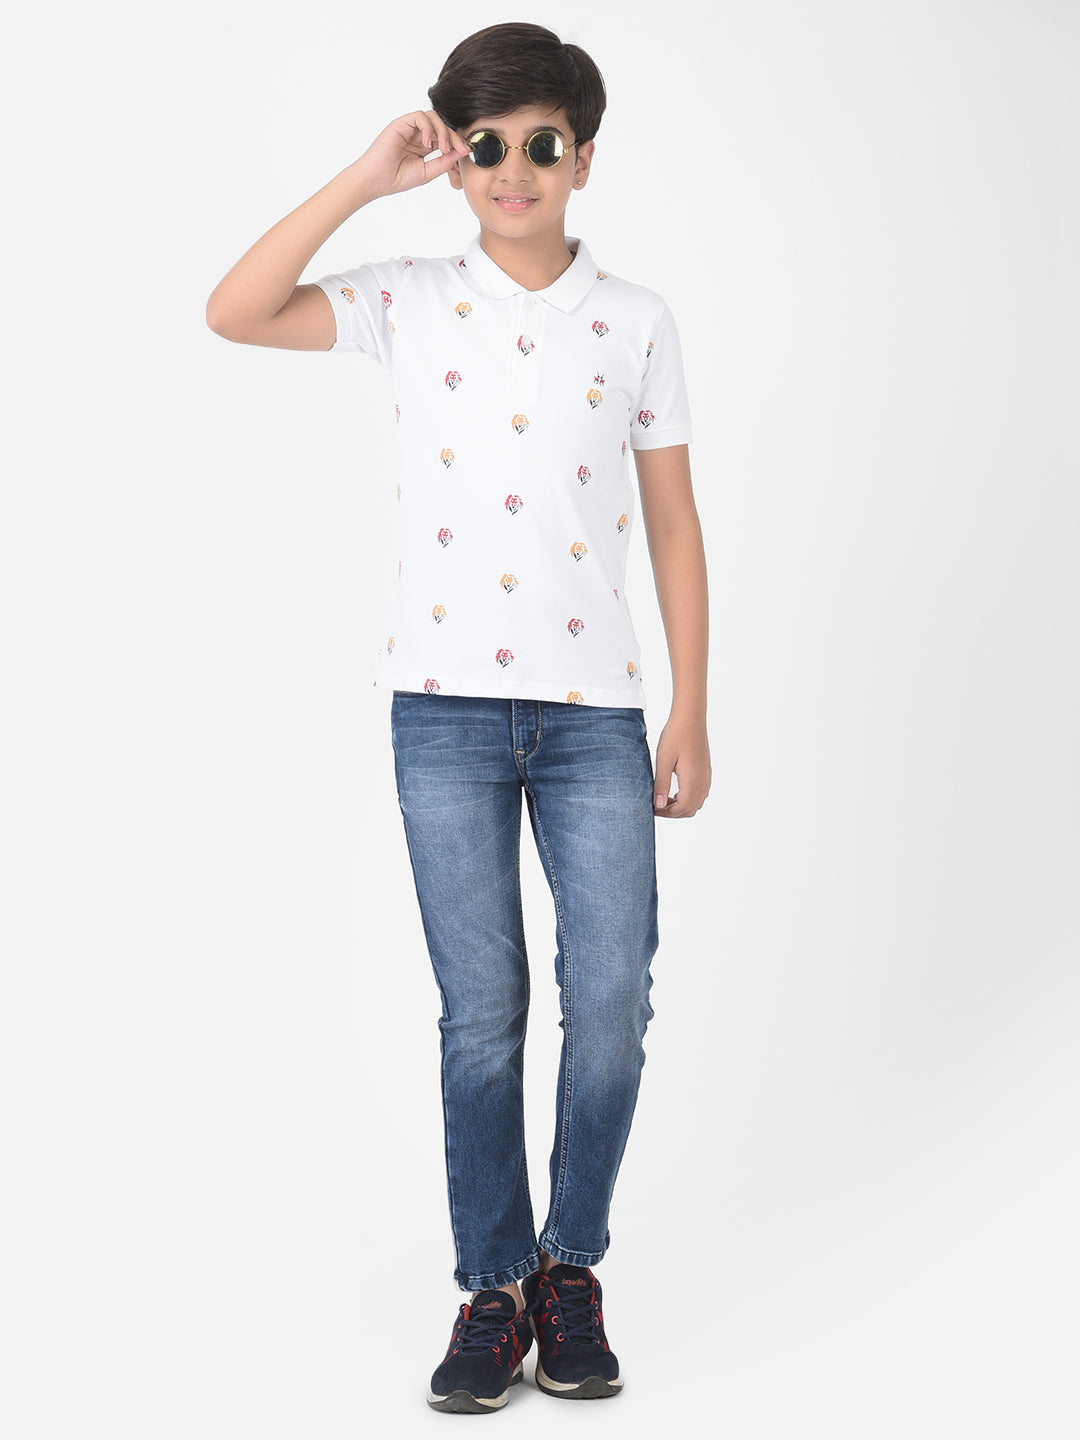 White Printed Polo T-shirt - Boys T-Shirts